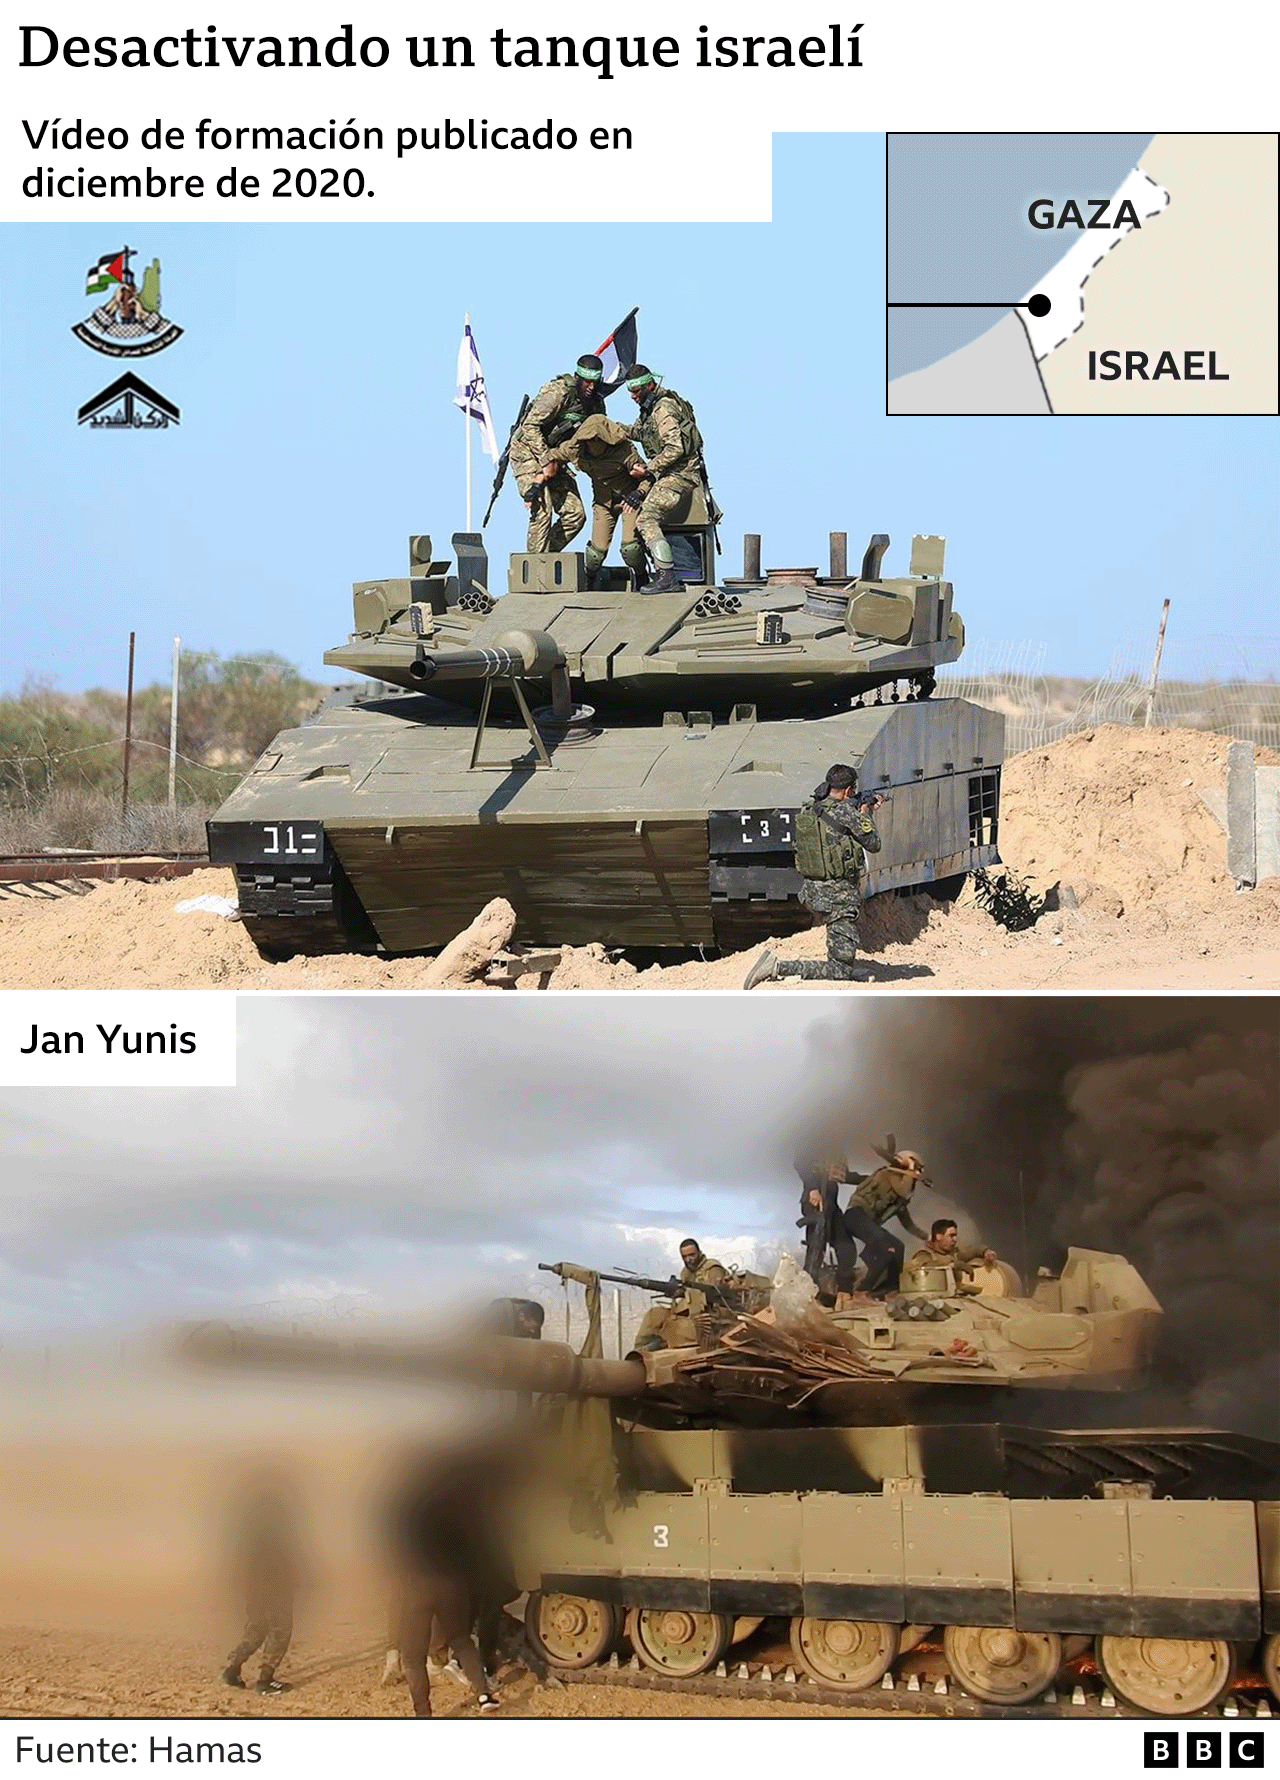 Un video de formación de Hamás.